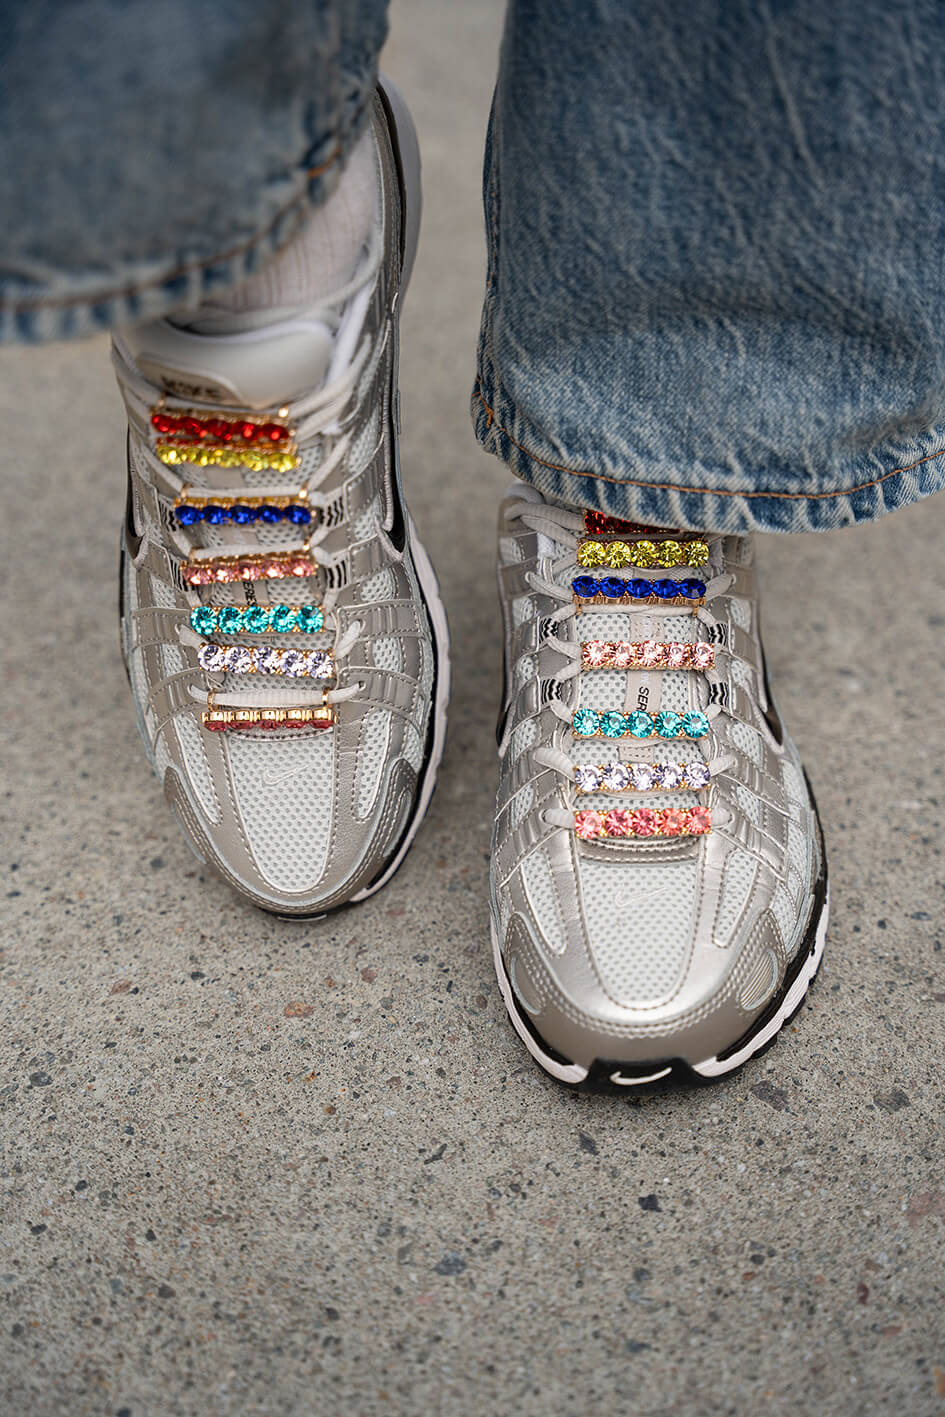 Modell med BILLIE Shoe bling i alle farger på sko